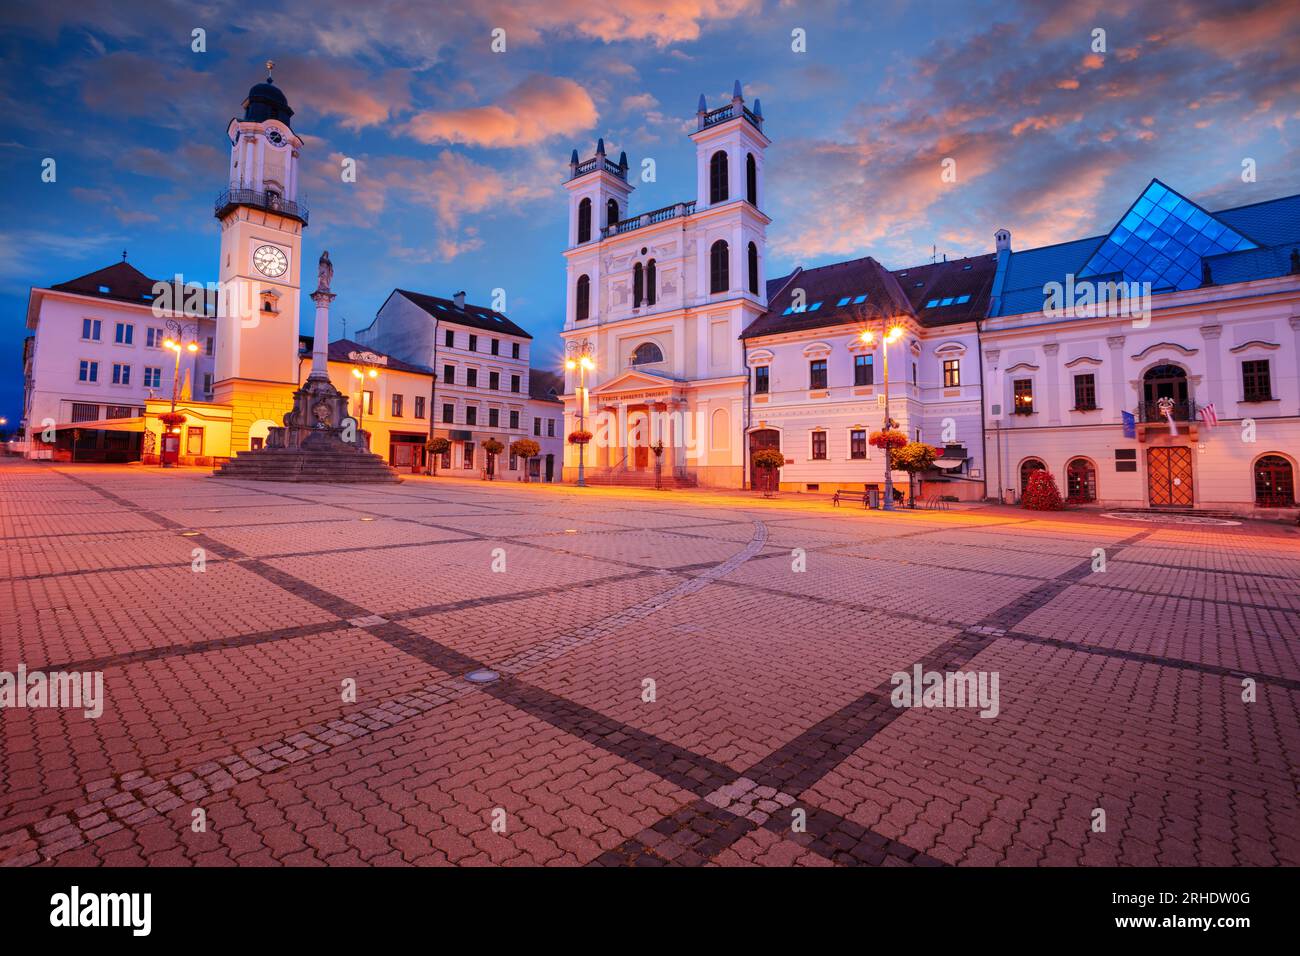 Banska Bystrica, Repubblica slovacca. Immagine del paesaggio urbano del centro di Banska Bystrica, in Slovacchia, con la piazza della rivolta nazionale slovacca all'alba d'estate. Foto Stock